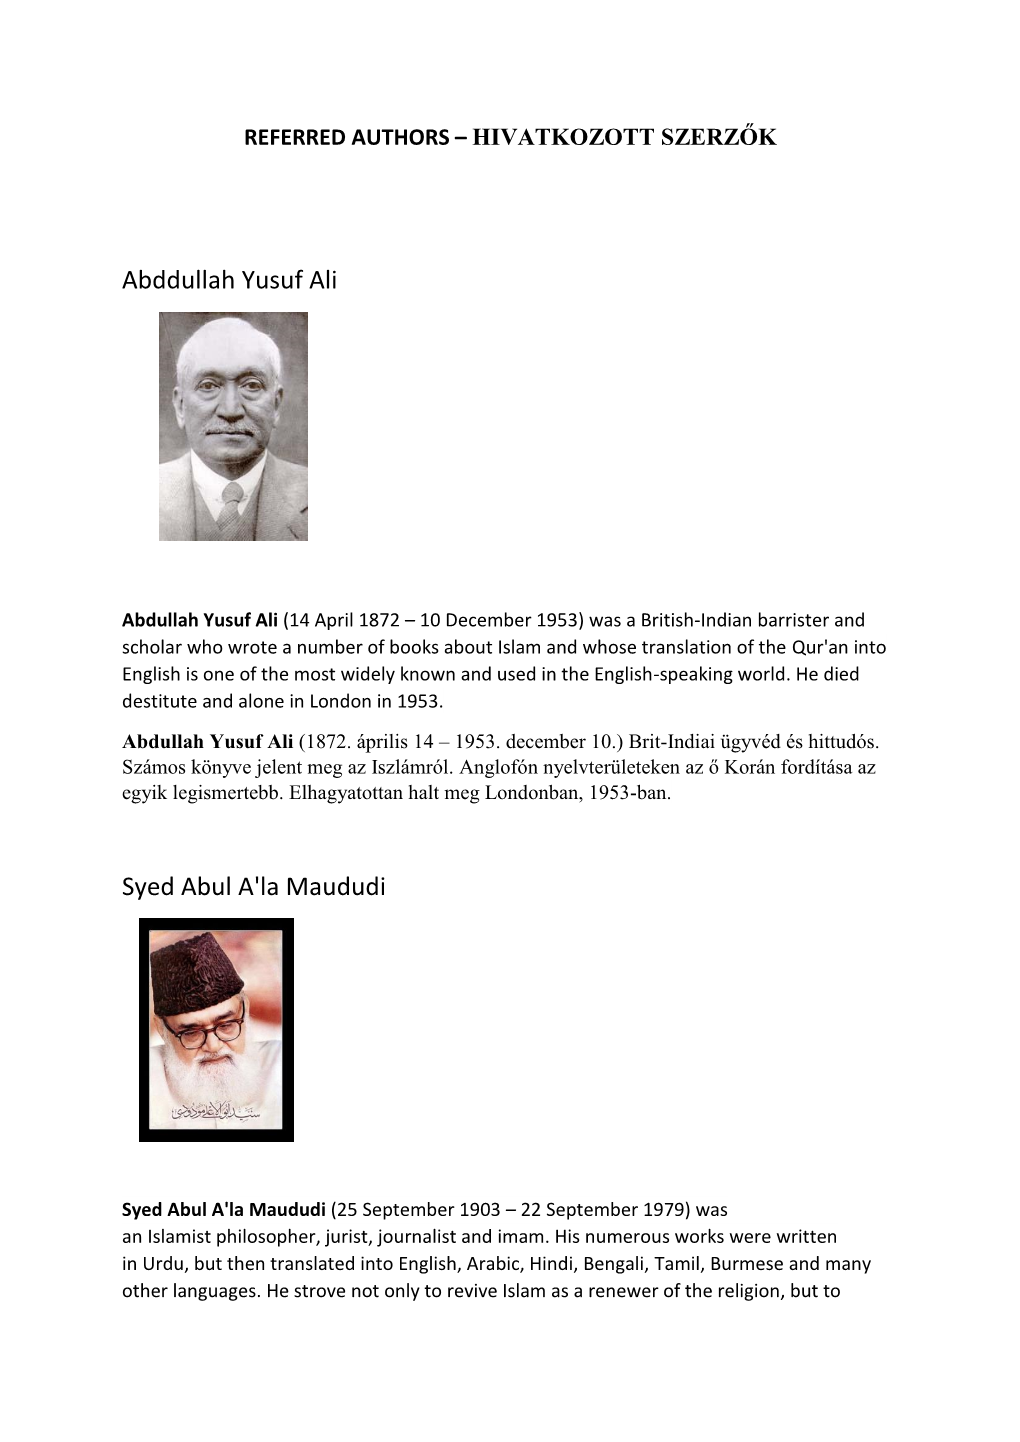 Abddullah Yusuf Ali Syed Abul A'la Maududi